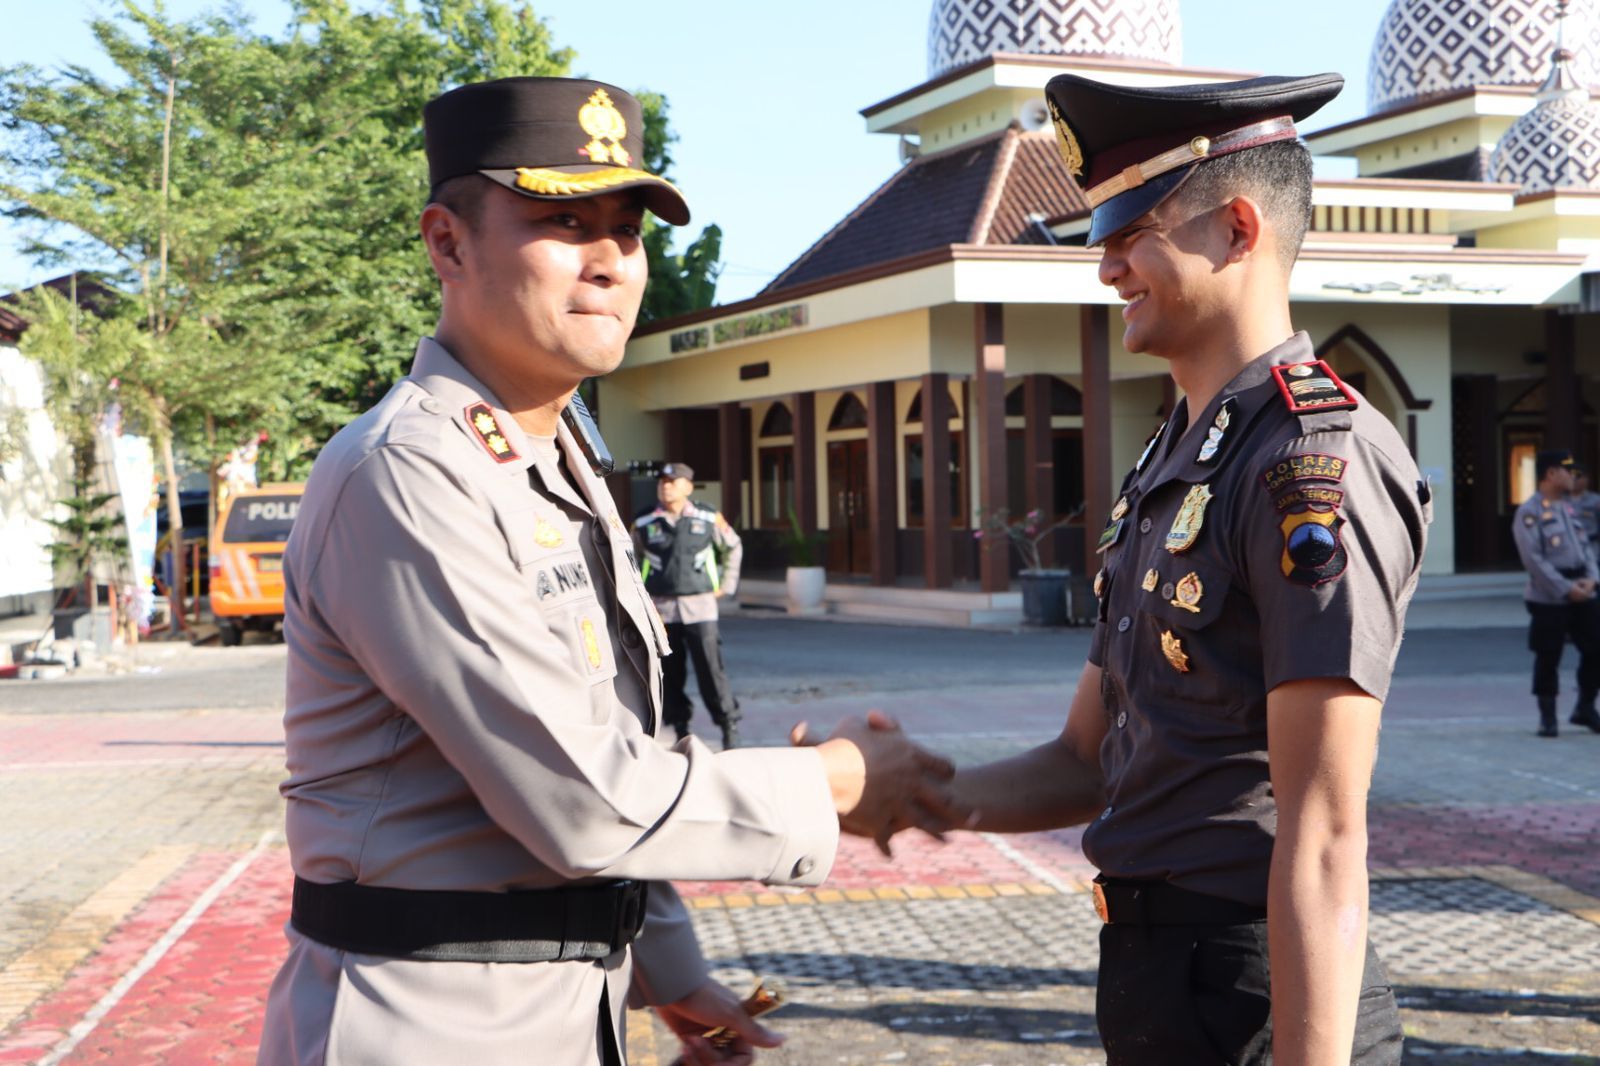 Ucapan selamat dari Kapolres Grobogan AKBP Dedy Anung Kurniawan kepada personel yang mendapat penghargaan kenaikan pangkat.